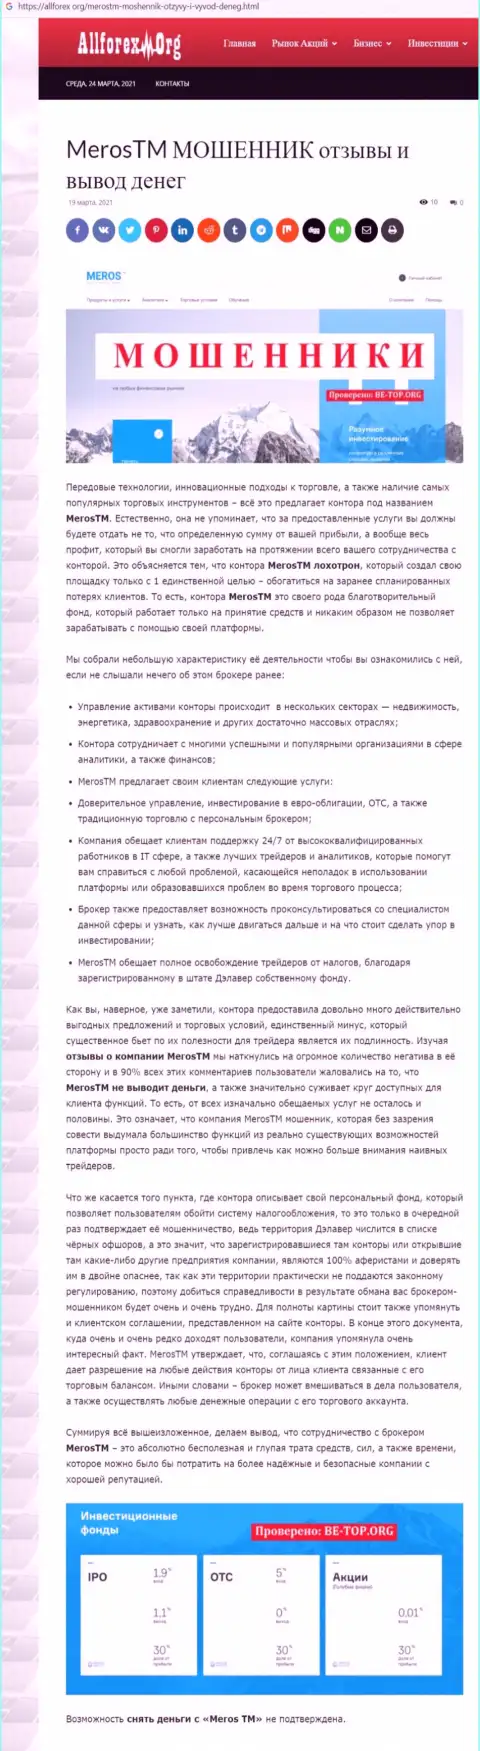 Компания MerosTM Com - это ОБМАНЩИКИ ! Обзор с фактами кидалова